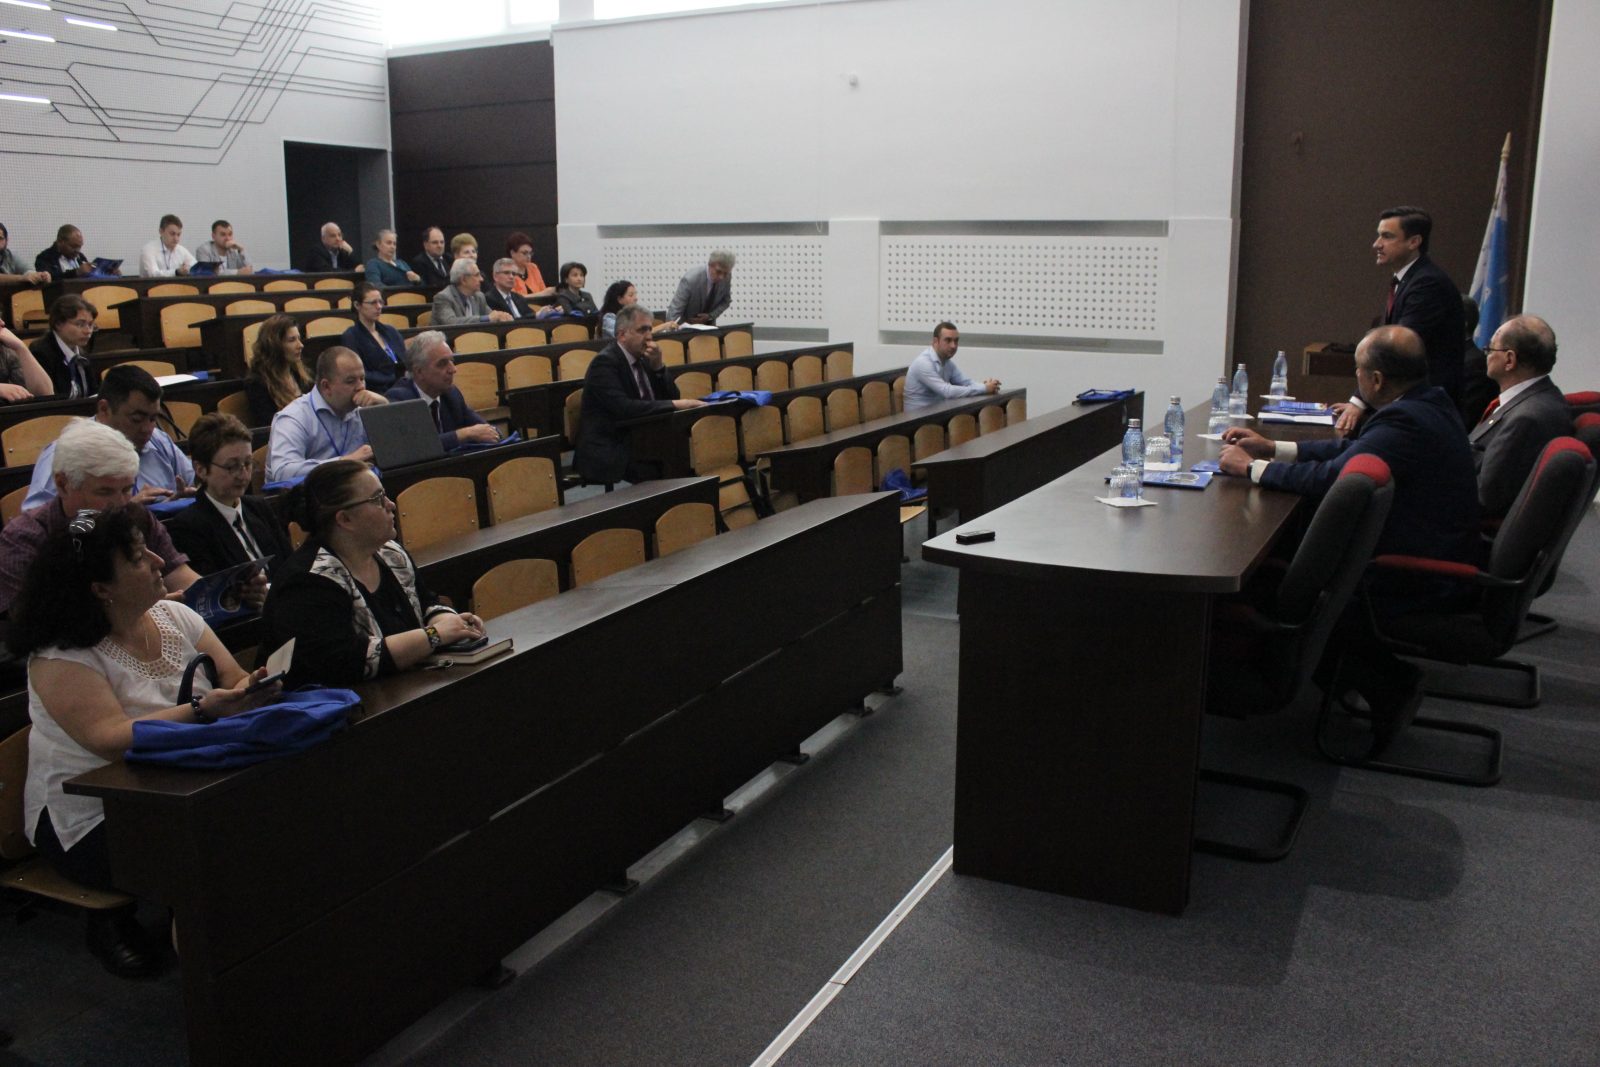 academicianul-bogdan-c-simionescu-a-vorbit-despre-planul-de-dezvoltare-a-romaniei-in-deschiderea-conferintei-scolii-doctorale-tuiasi-2018